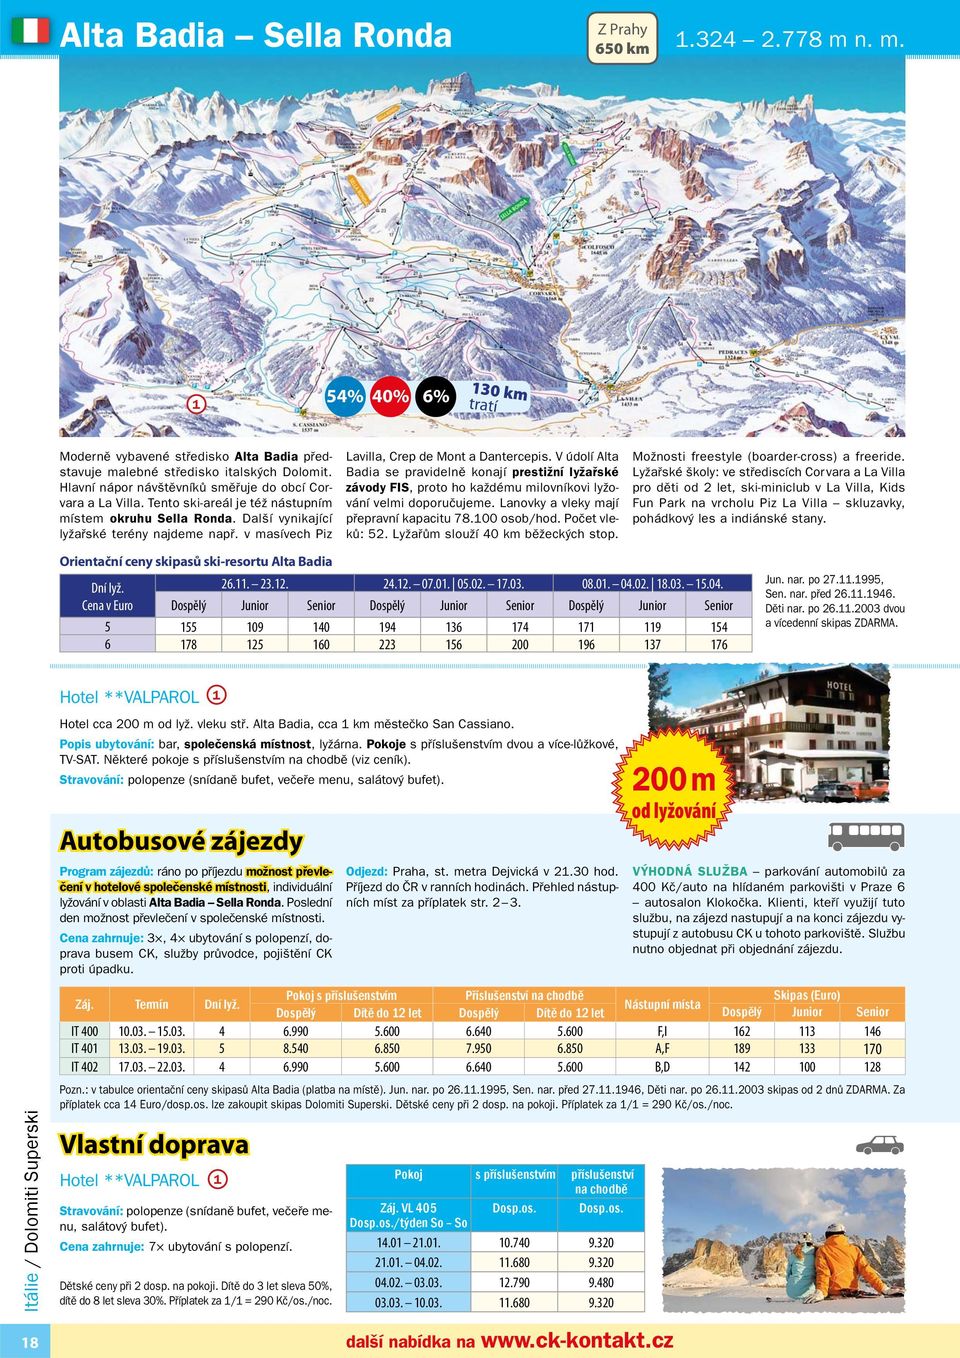 v masívech Piz Lavilla, Crep de Mont a Dantercepis. V údolí Alta Badia se pravidelně konají prestižní lyžařské závody FIS, proto ho každému milovníkovi lyžování velmi doporučujeme.